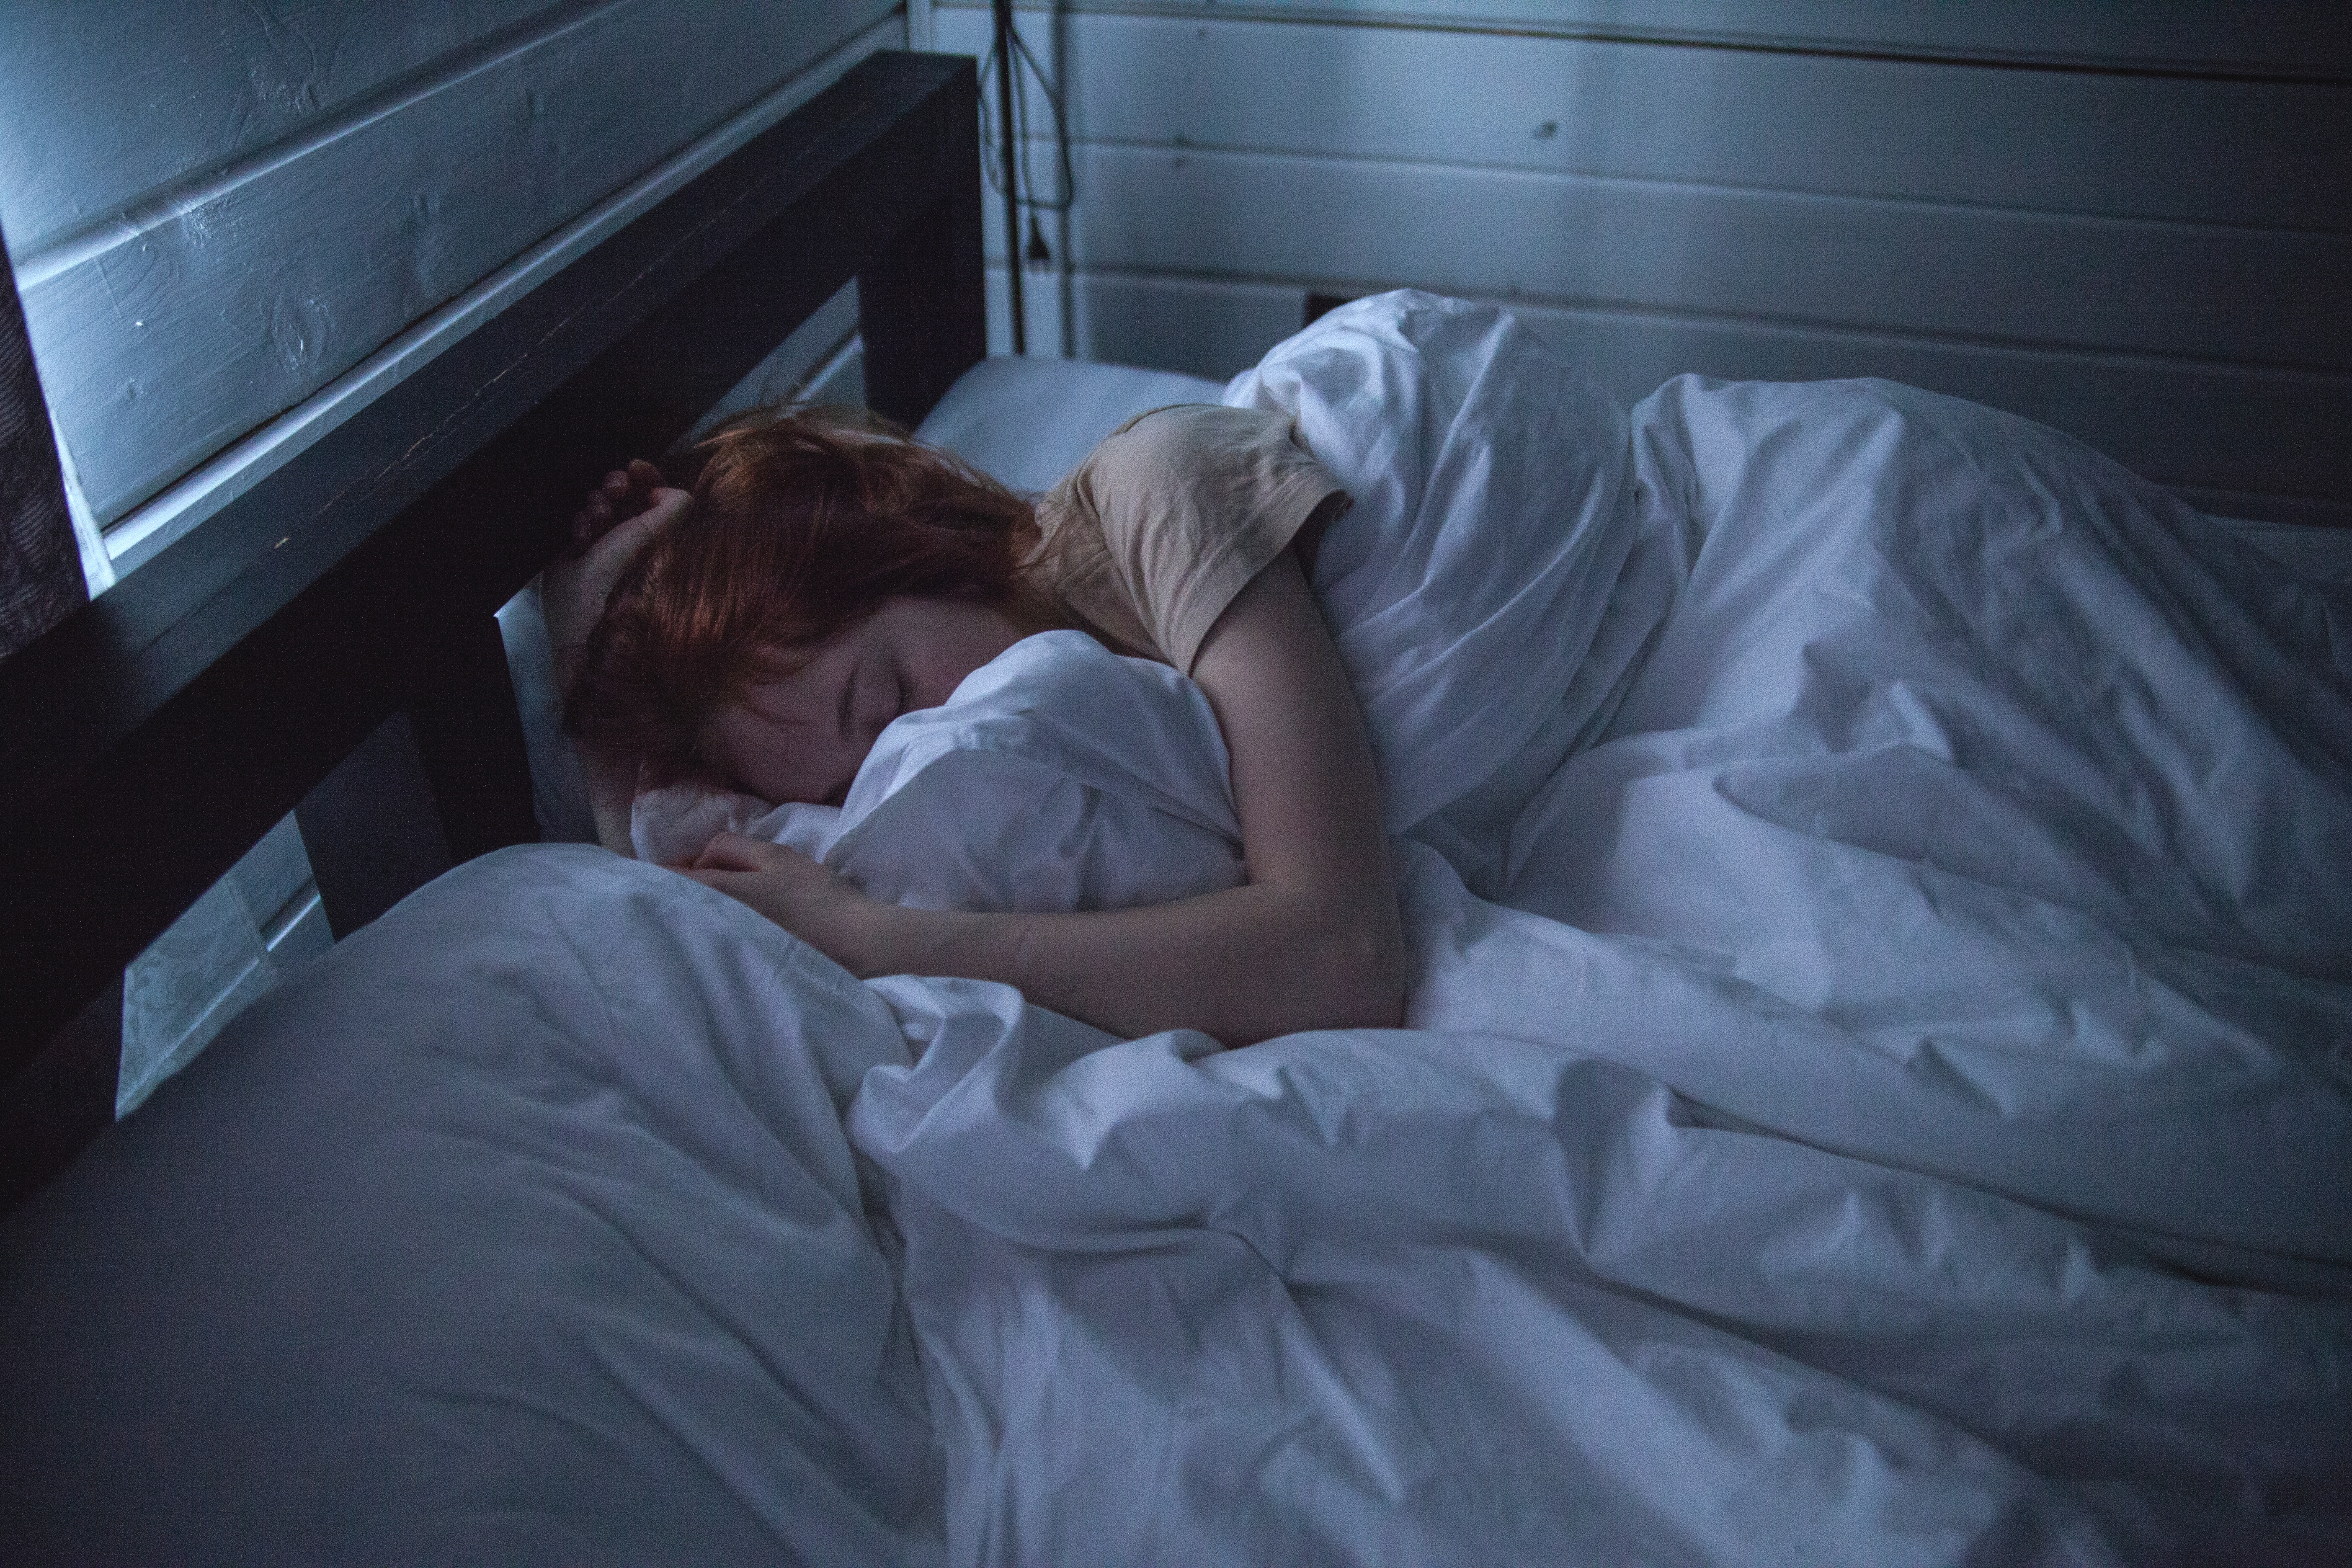 El sueño y la salud: ¿En qué consiste dormir bien y qué factores pueden desencadenar trastornos?